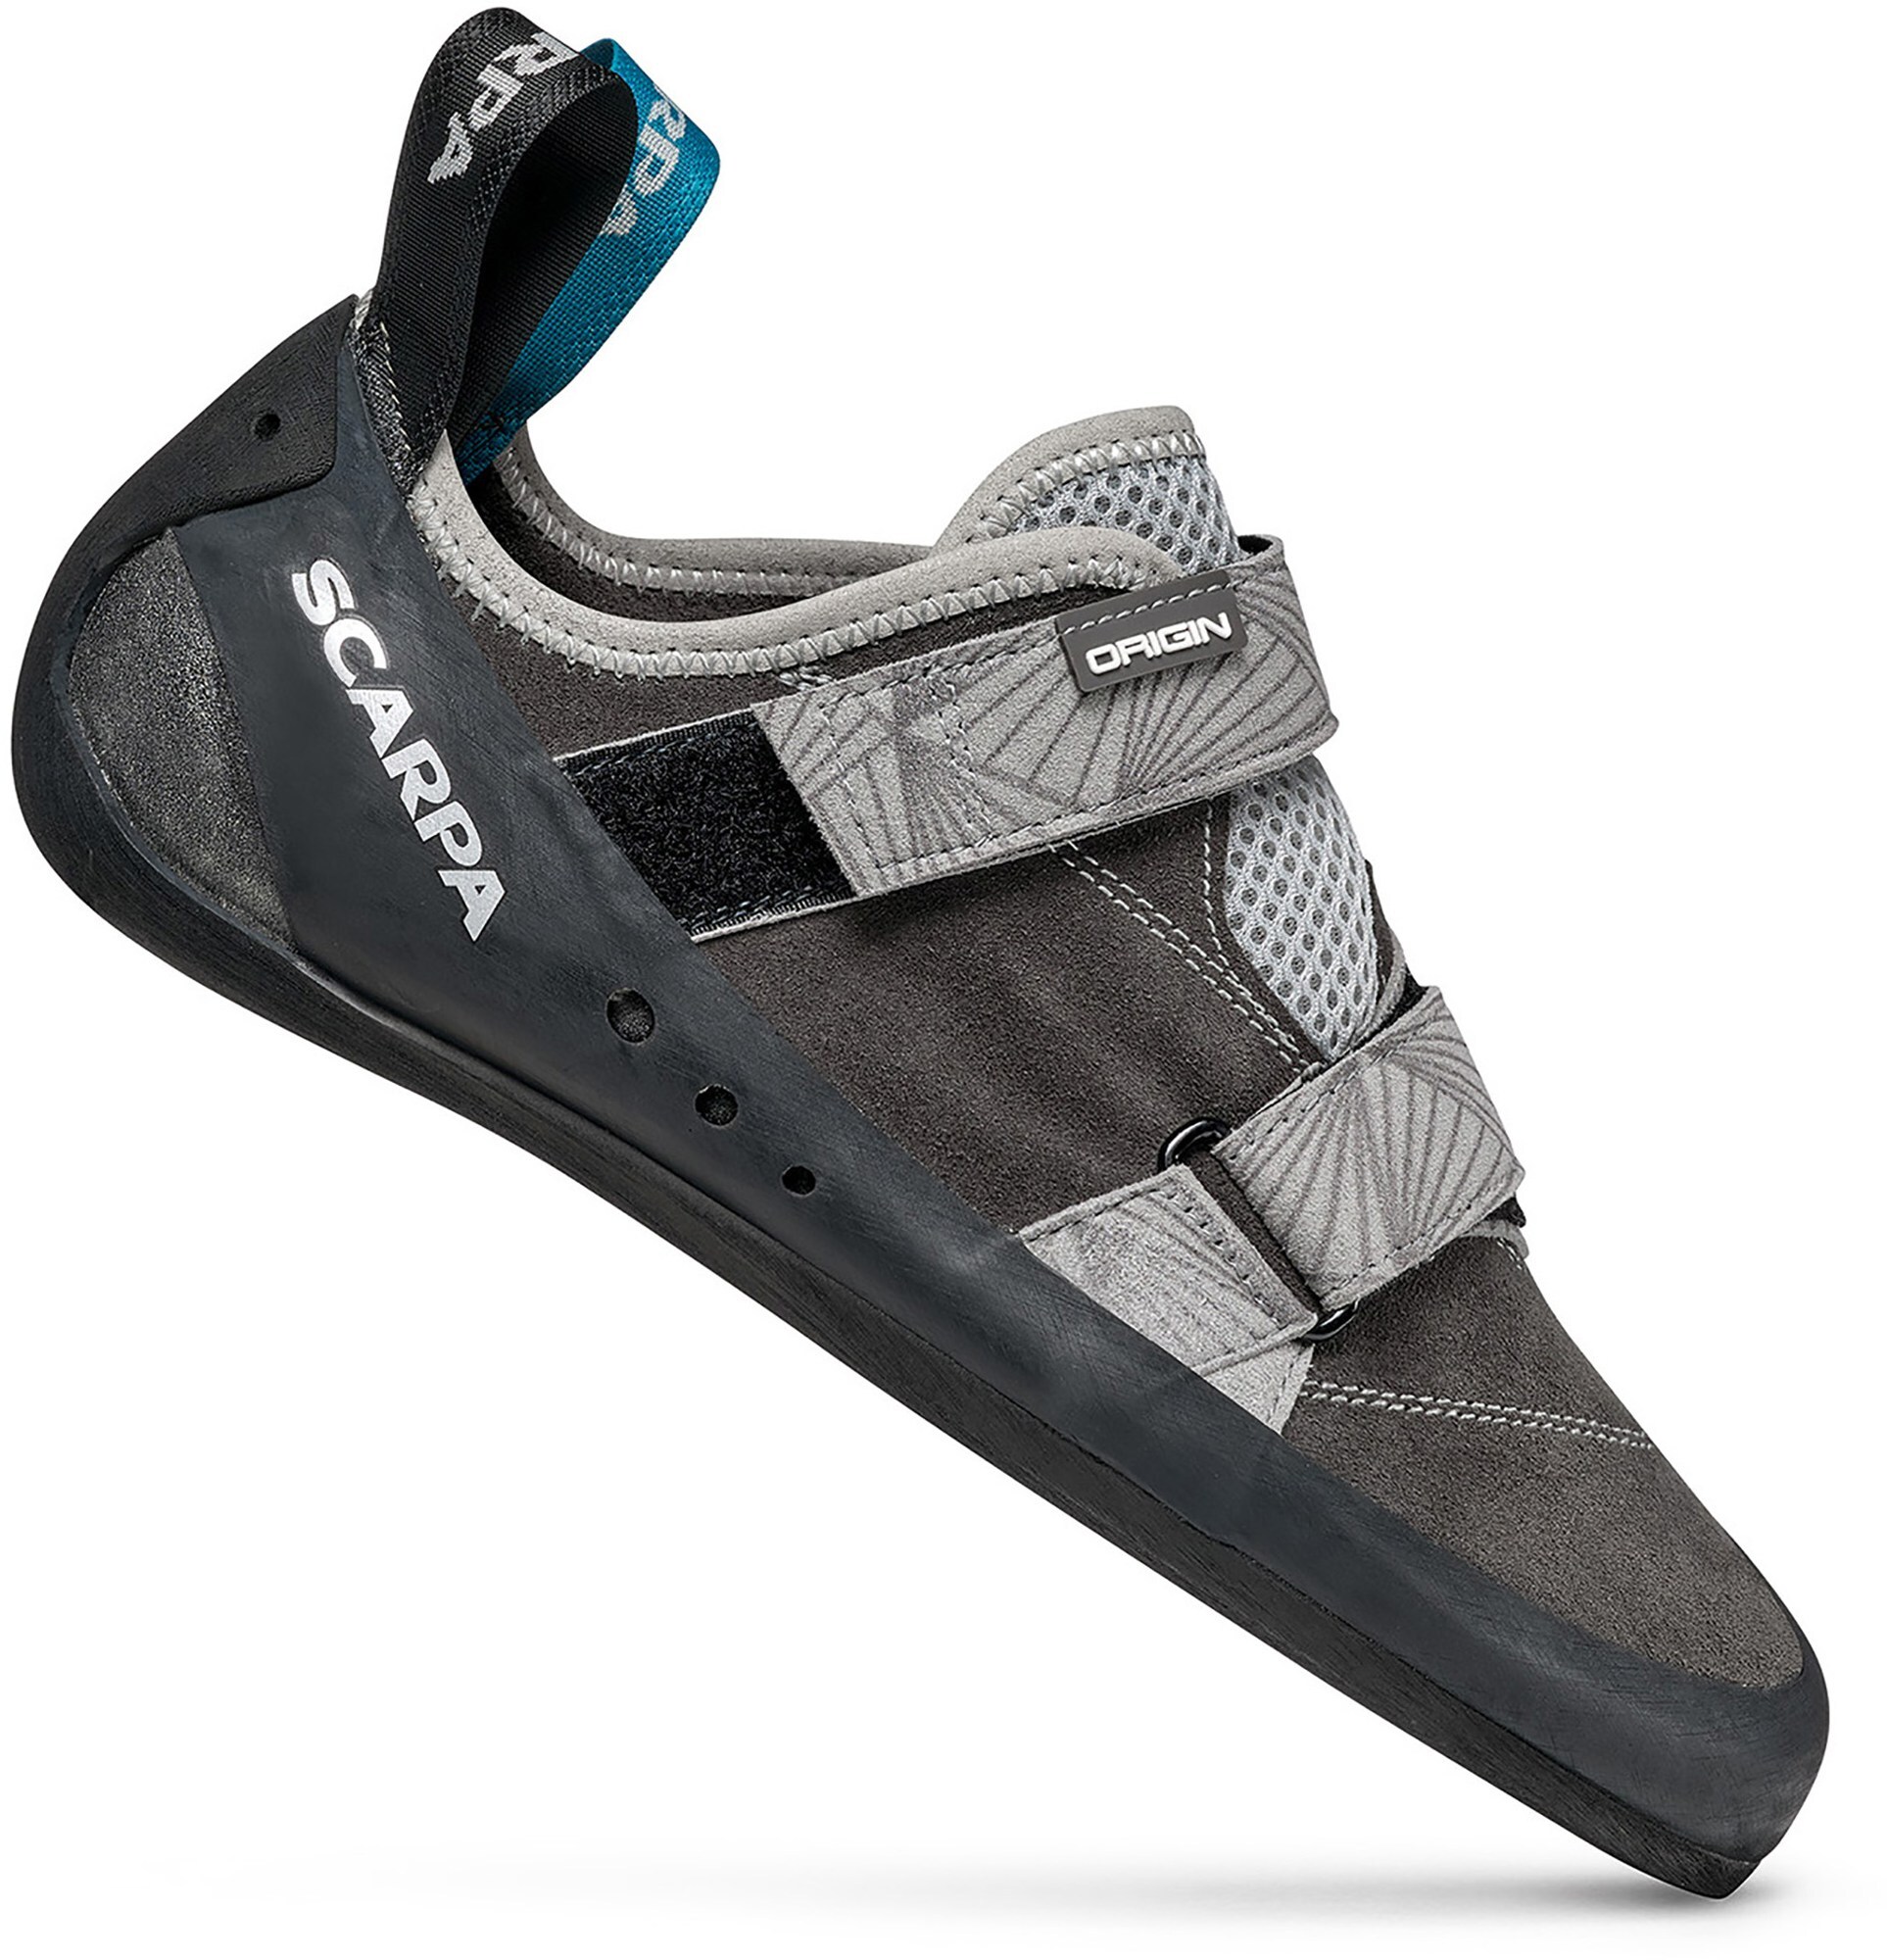 Scarpa-Origin-rock-climbing-shoes